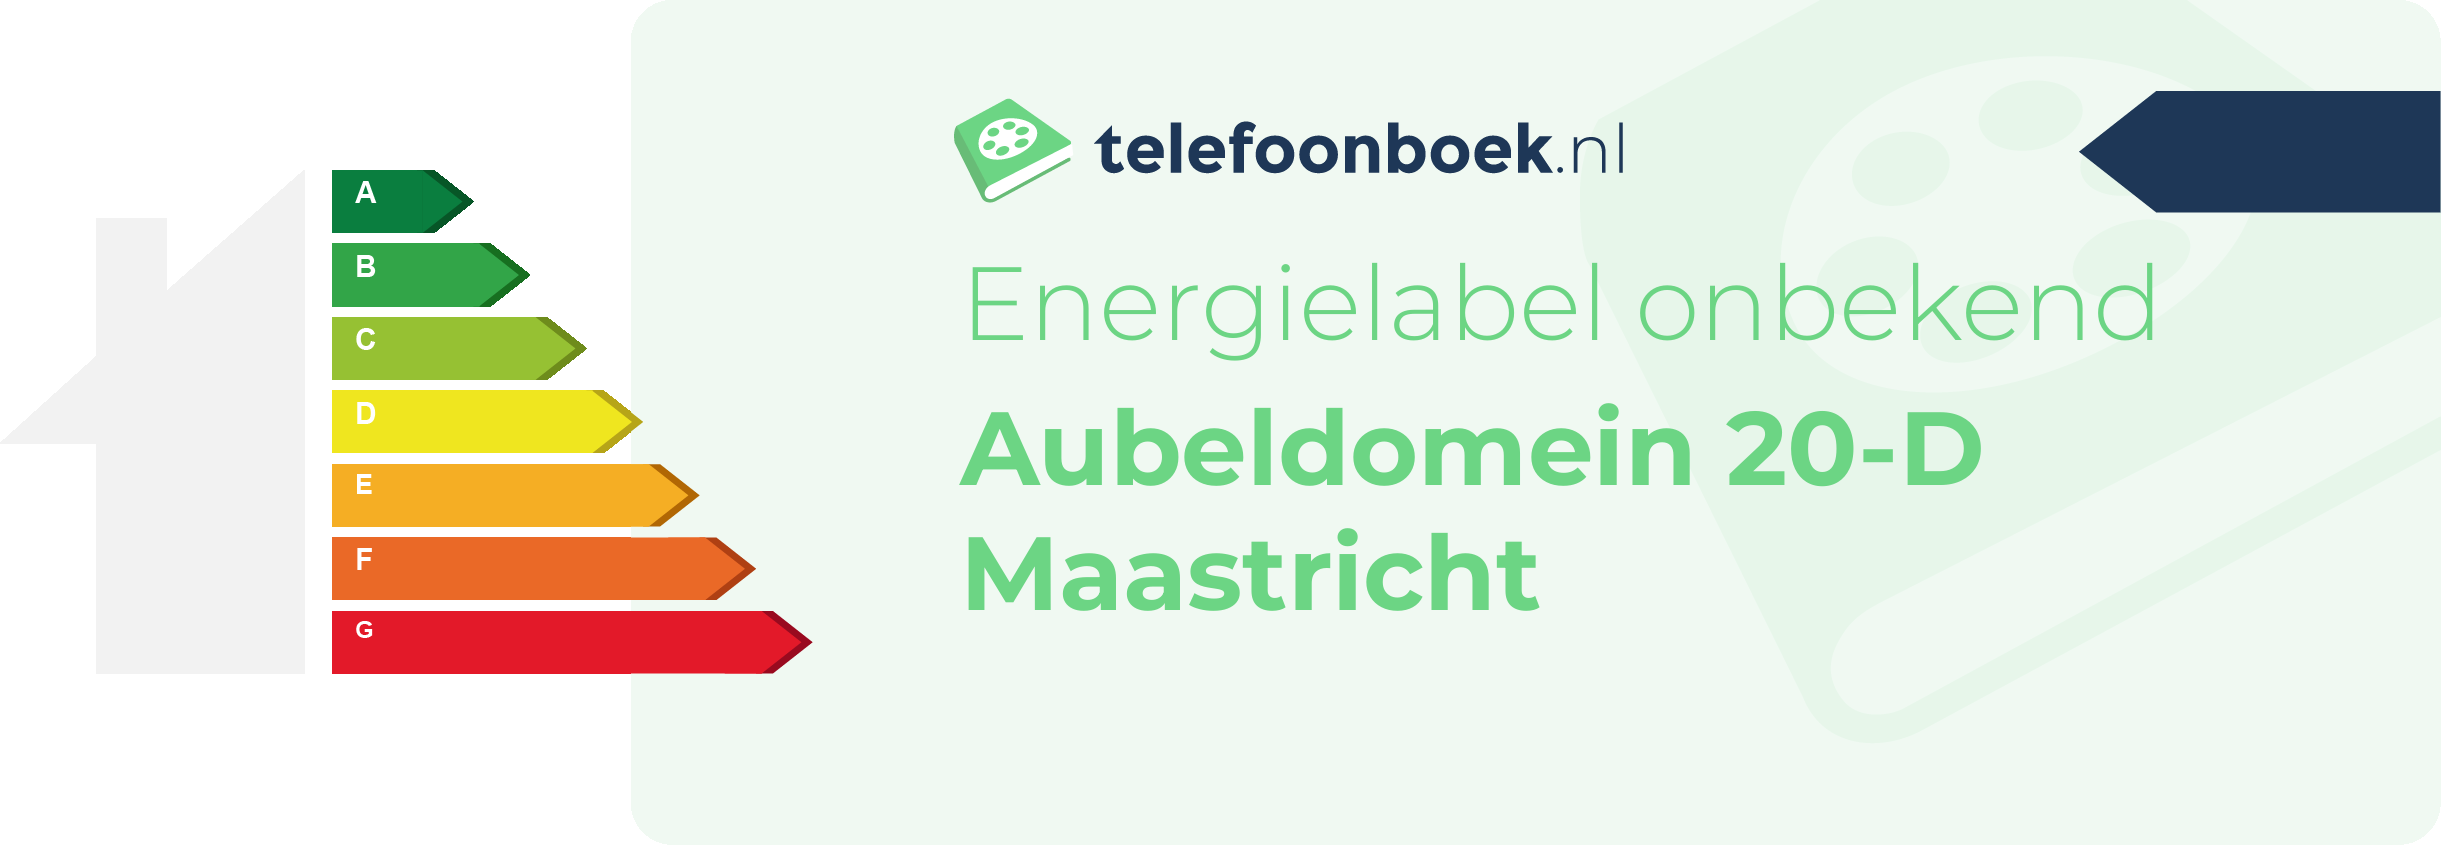 Energielabel Aubeldomein 20-D Maastricht